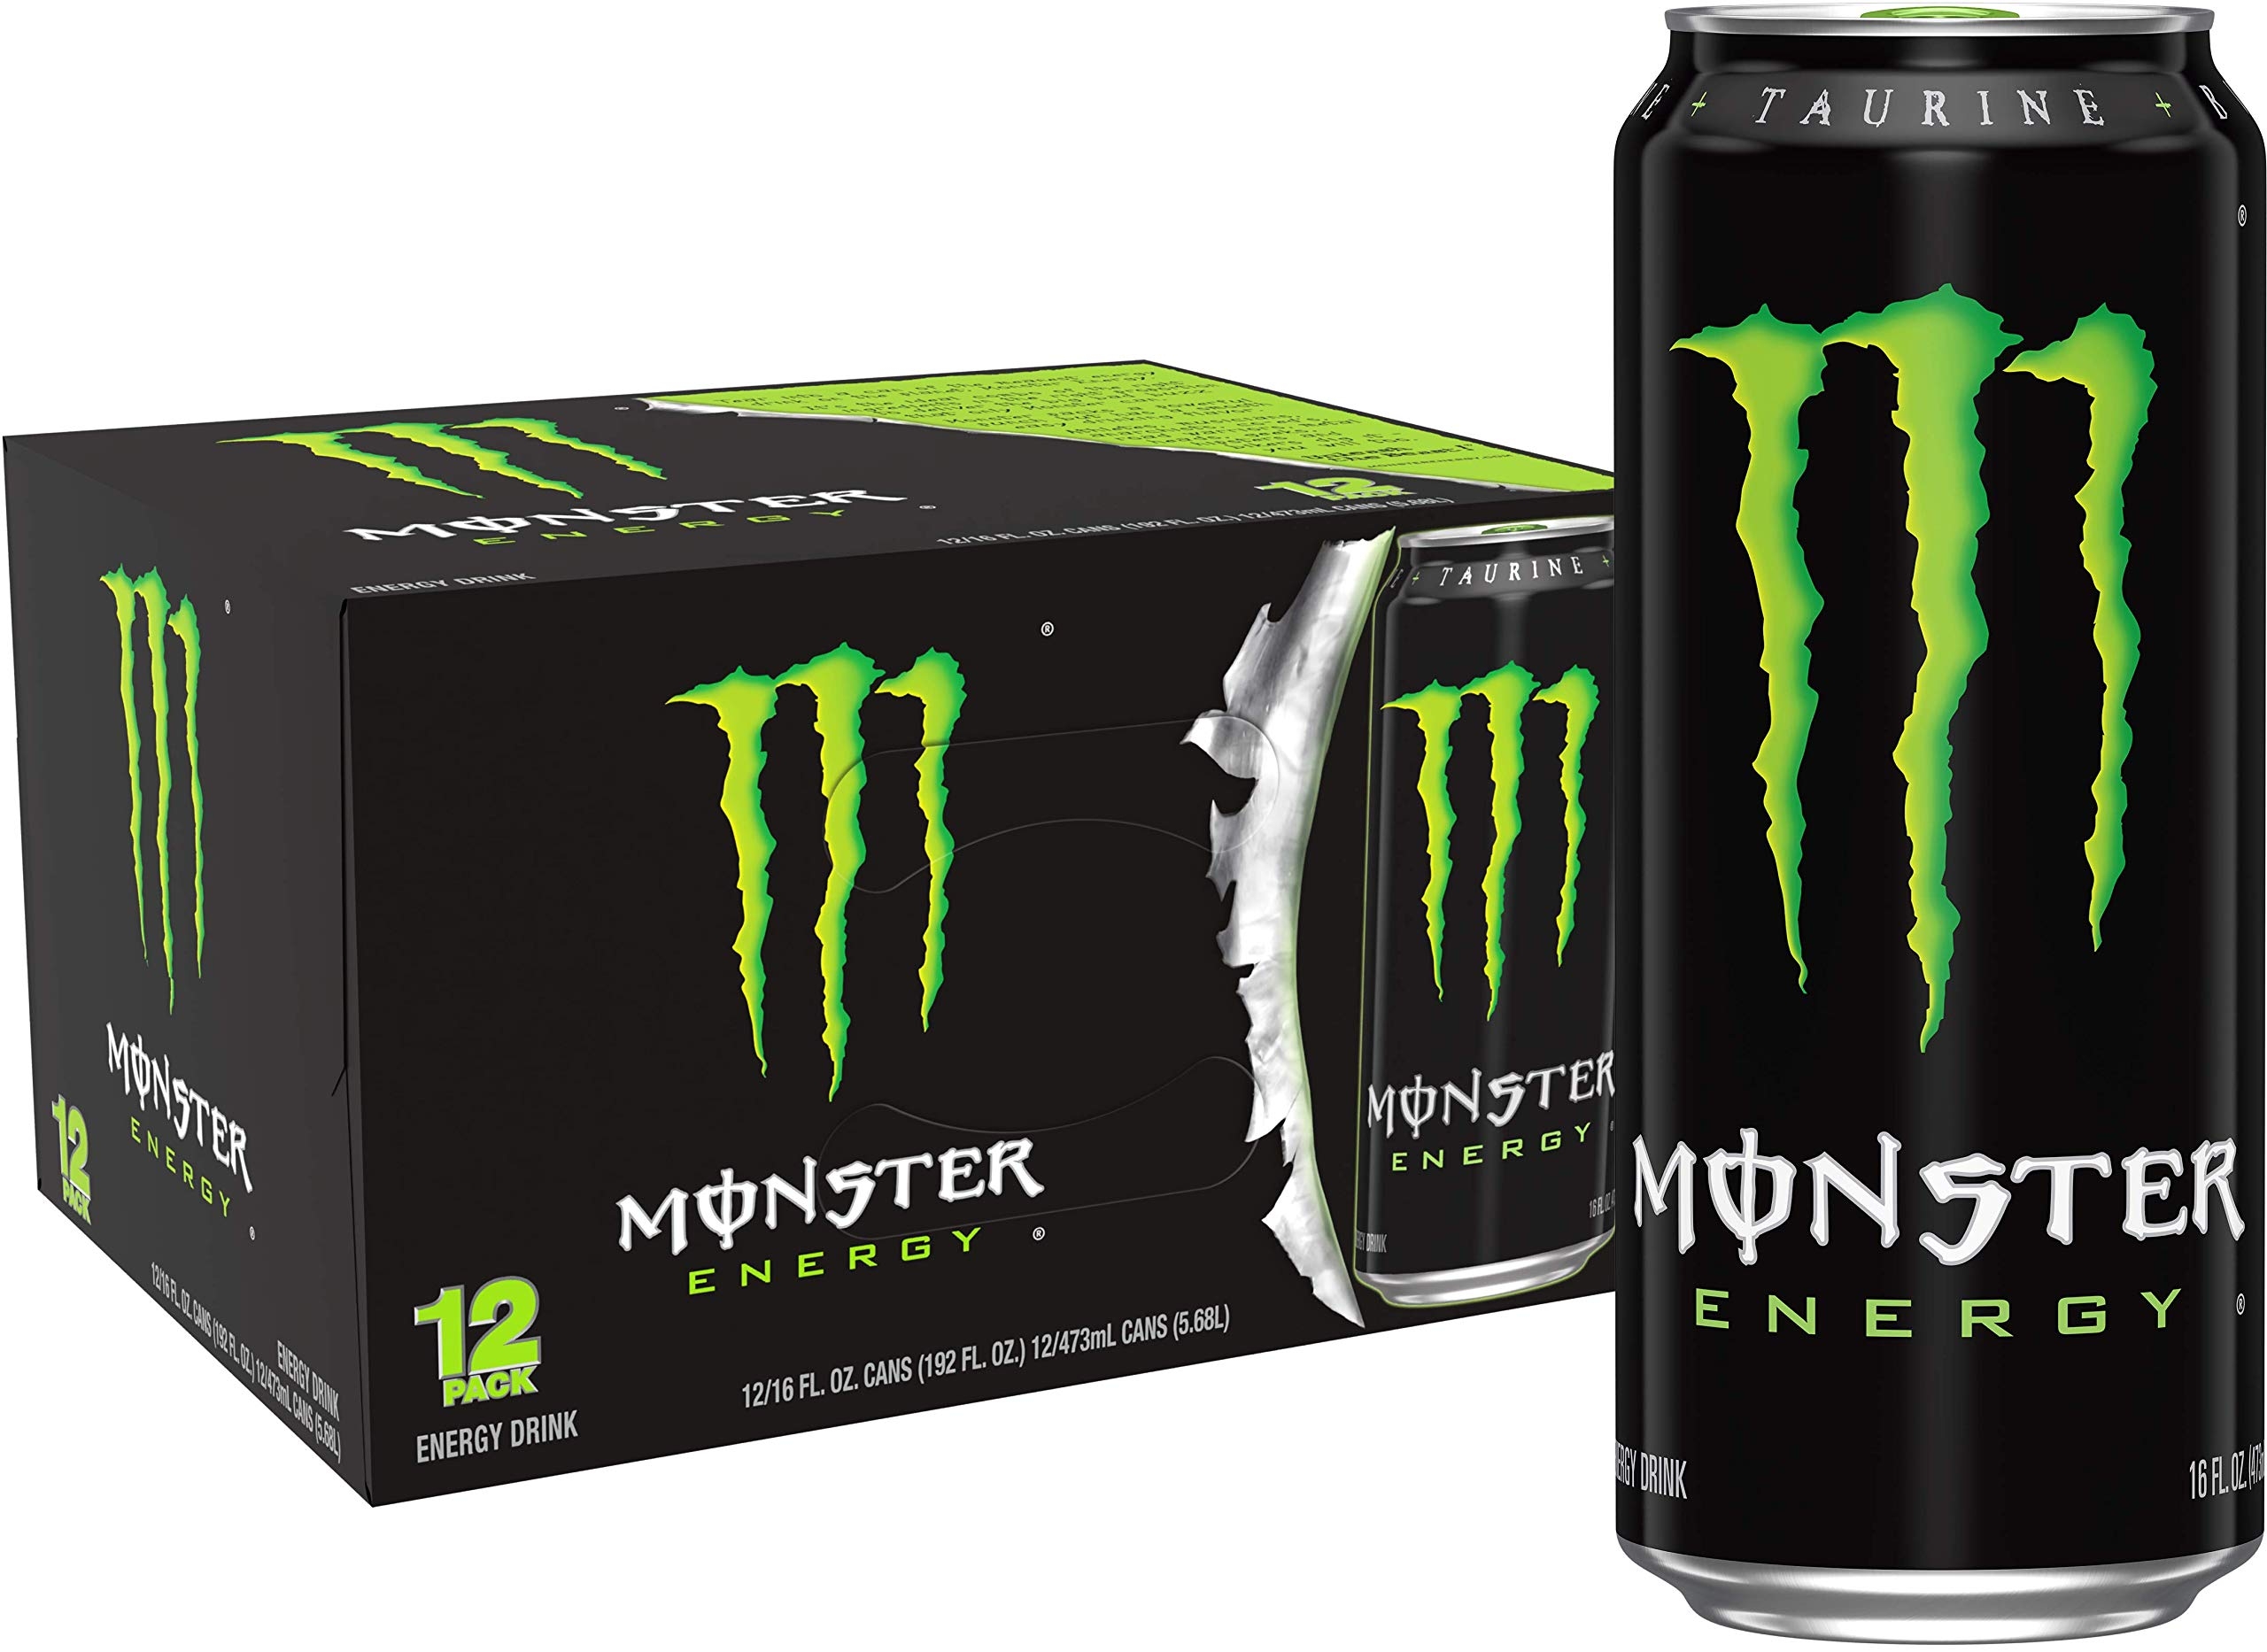 Ini Daftar Harga Minuman Monster Energy Drink Terbaru